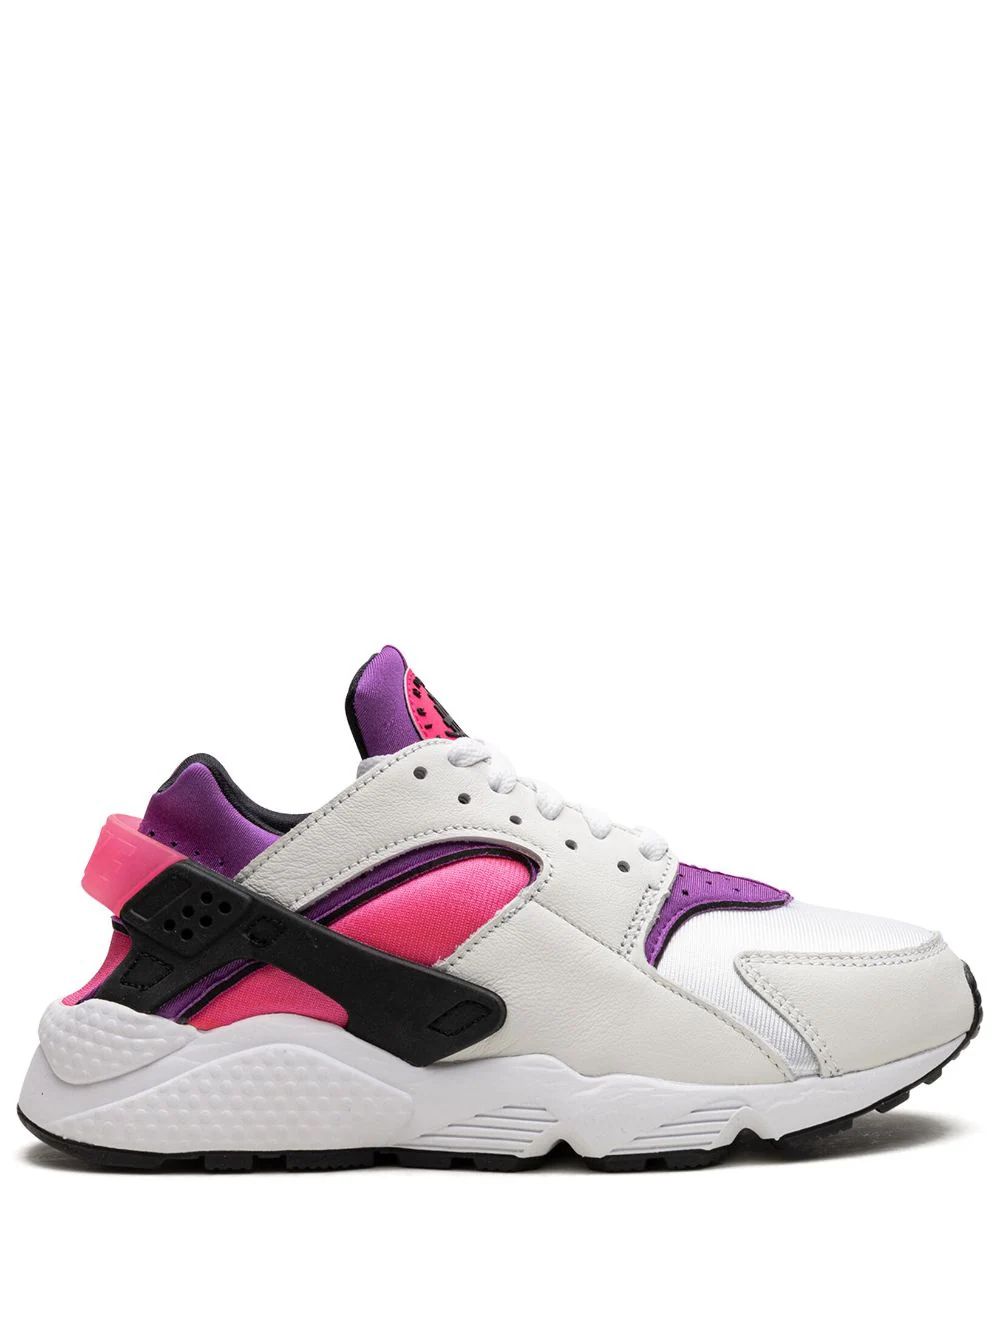 Nike Air Huarache "White/Hyper Pink" Sneakers - Farfetch | Farfetch Global